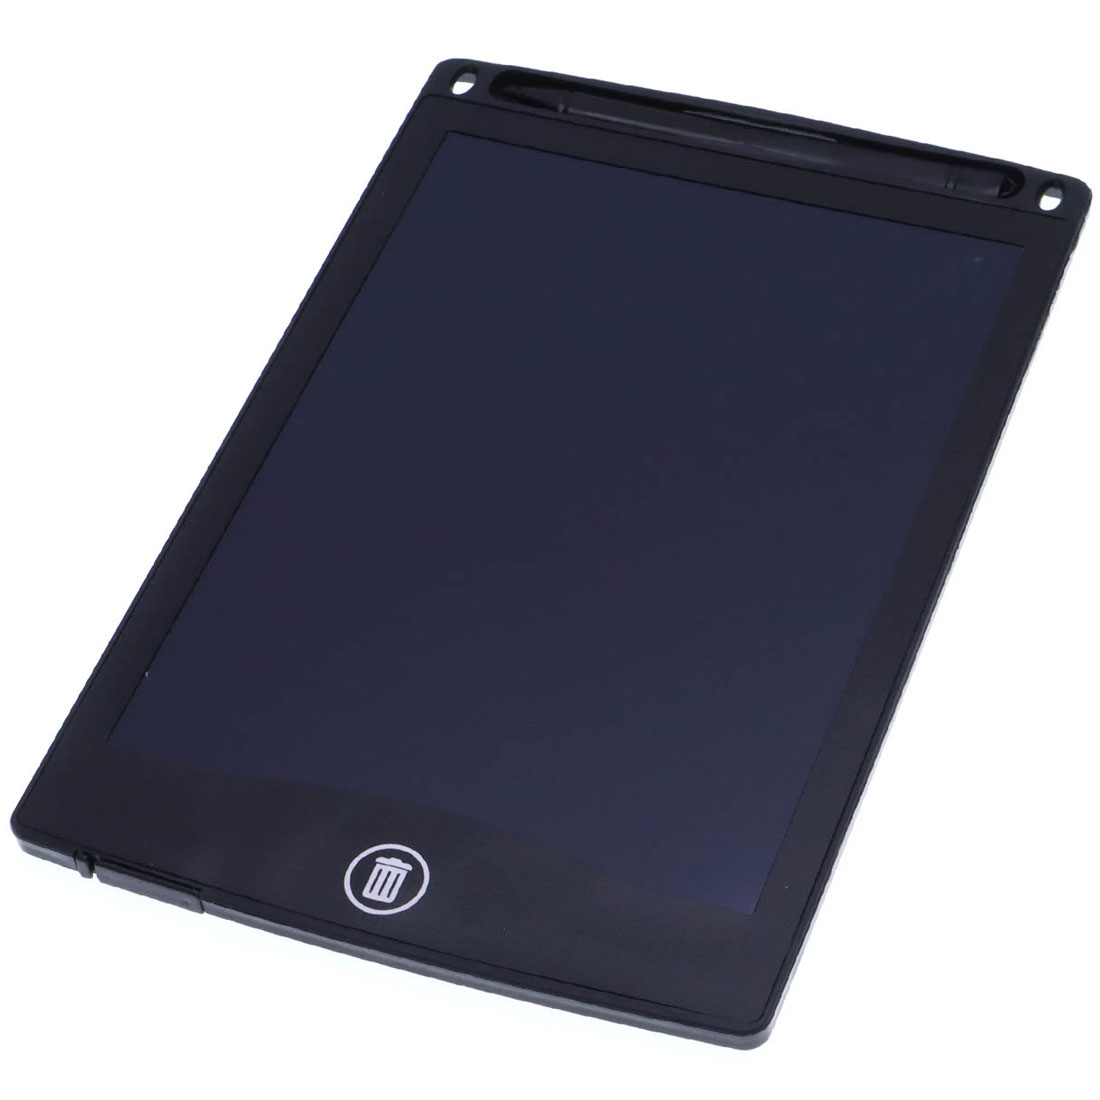 Графический планшет BAIBIAN с сенсорным цветным дисплеем для рисования, 8.5 дюймов, цвет черный